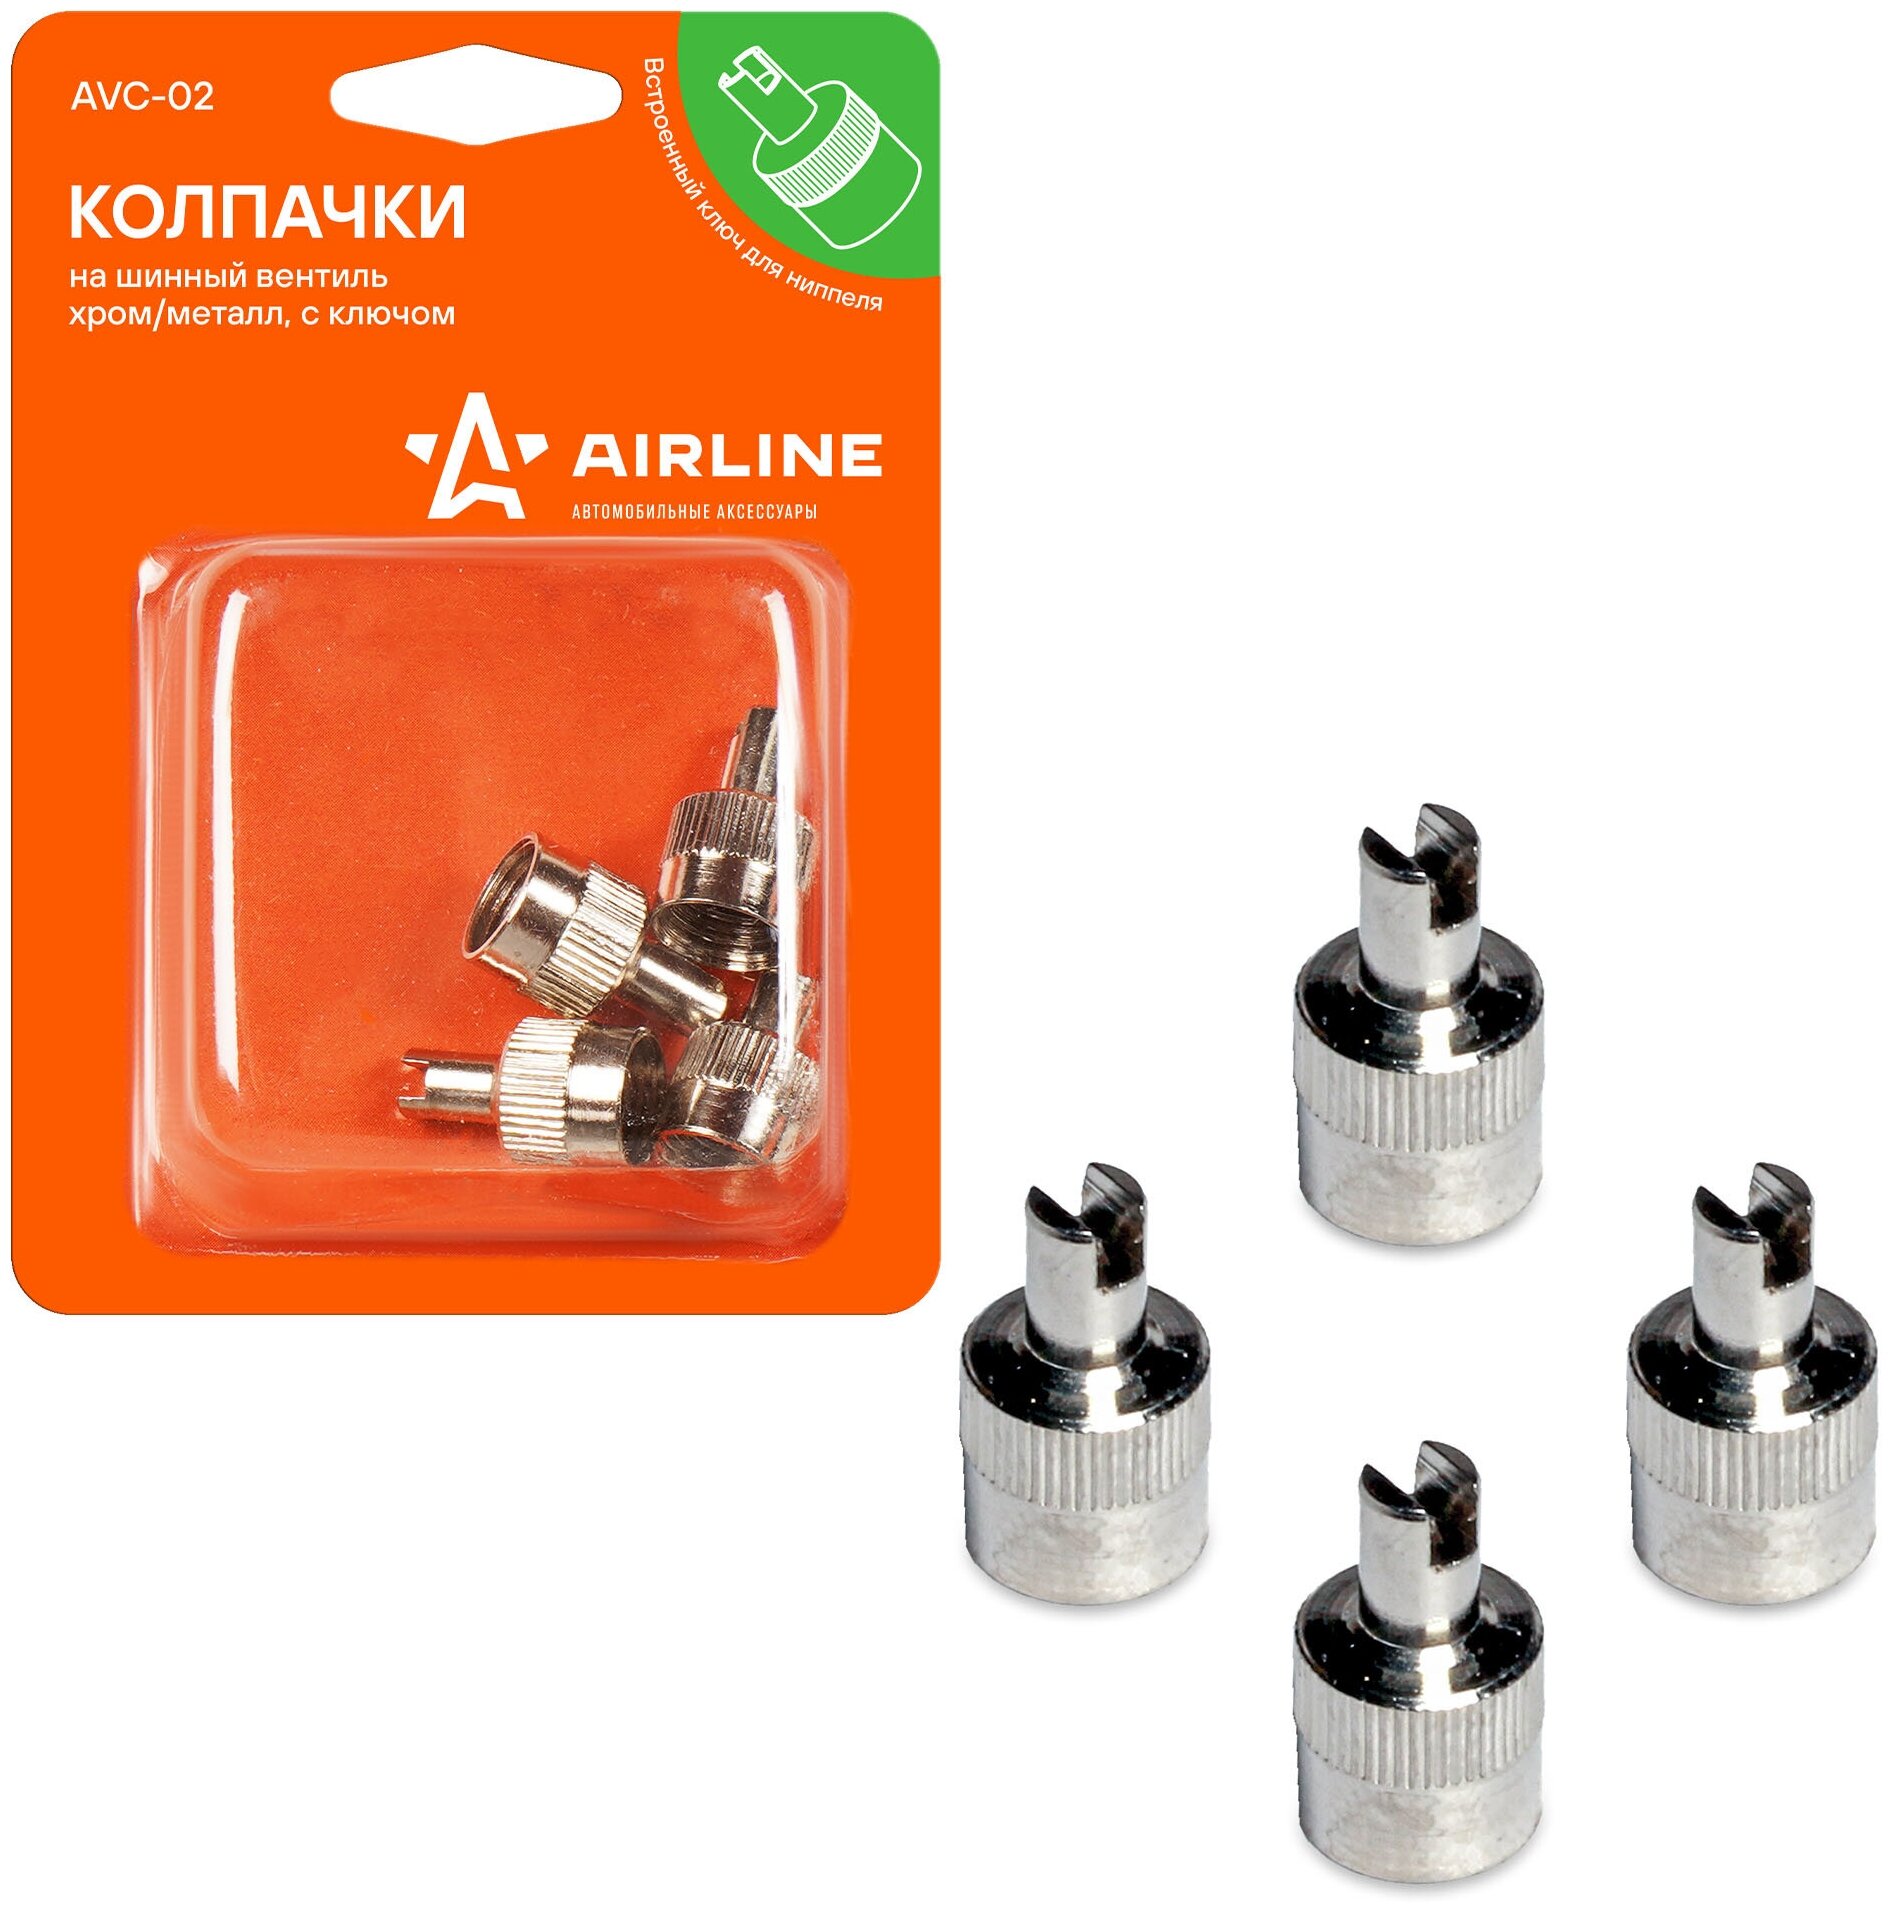 Колпачки на шинный вентиль с ключом, хром, металл, 4 шт. AVC-02 AIRLINE